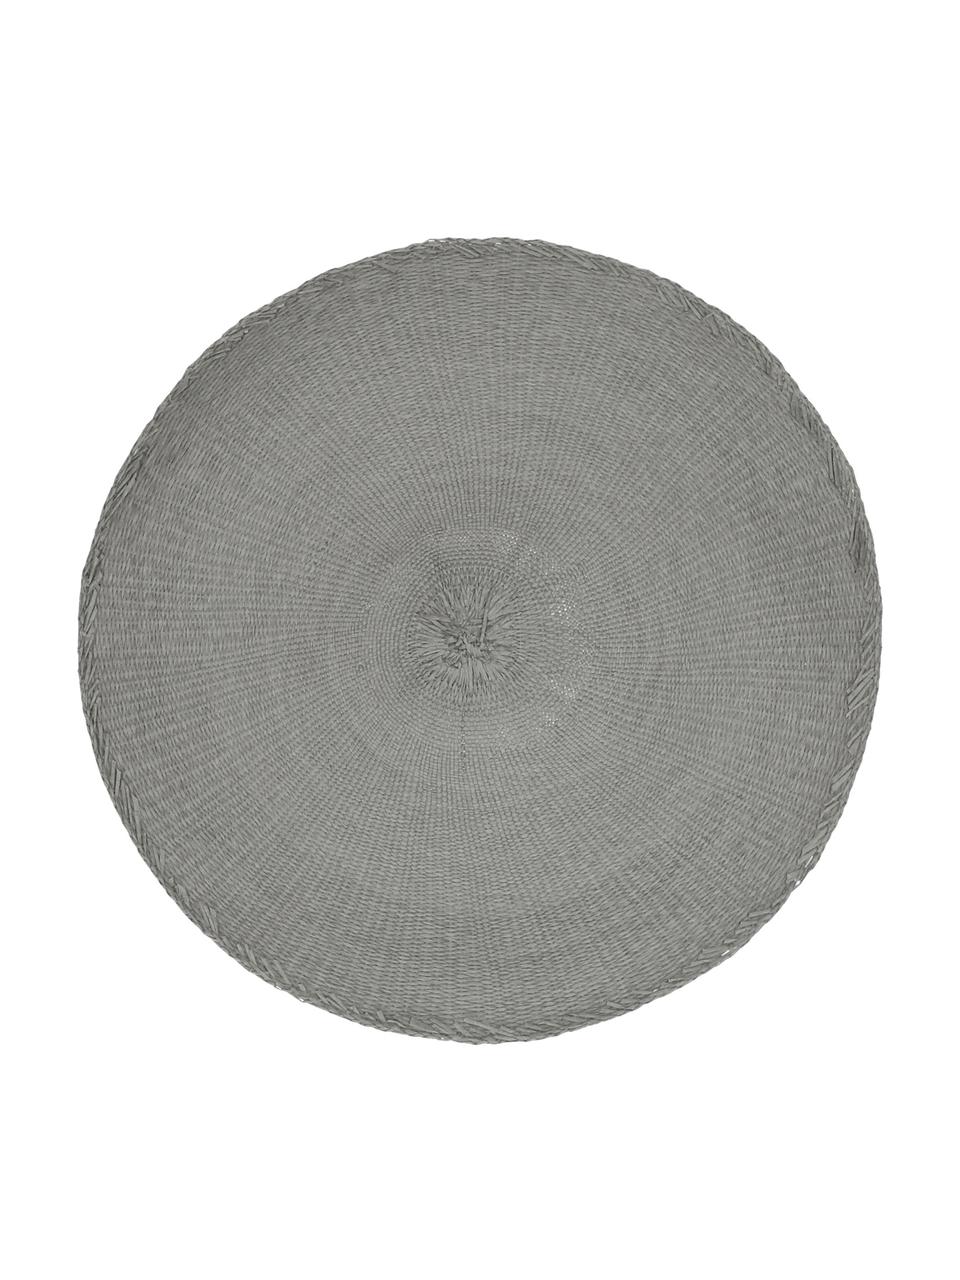 Okrągła podkładka Kolori, 2 szt., Włókna papierowe, Szary, Ø 38 cm